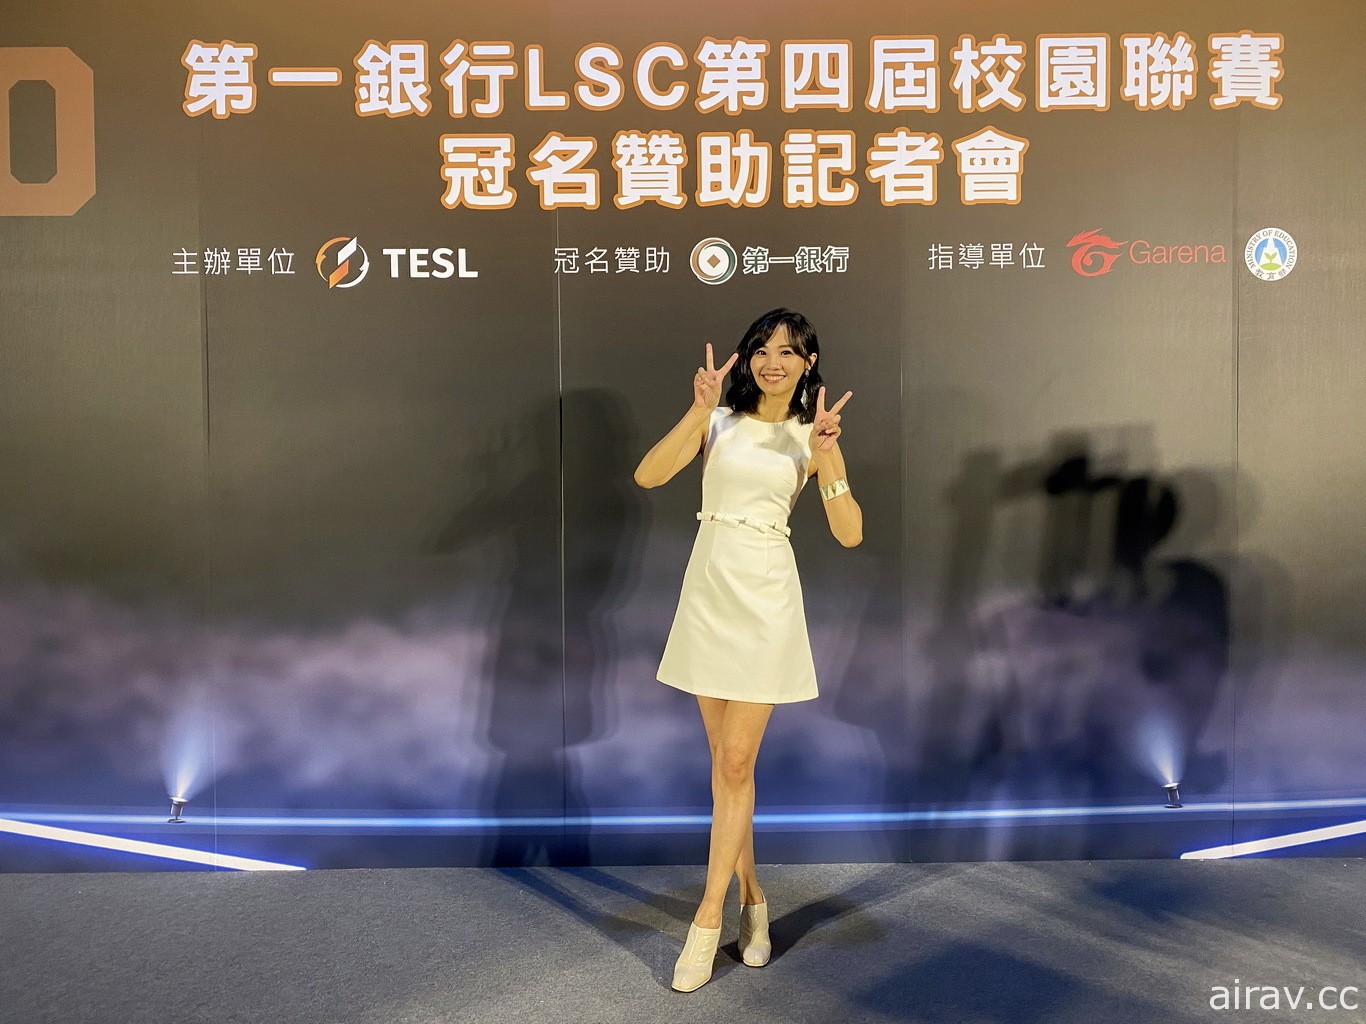 第一银行冠名赞助《英雄联盟》第四届校园电竞联赛 LSC 期待培养更多台湾电竞人才